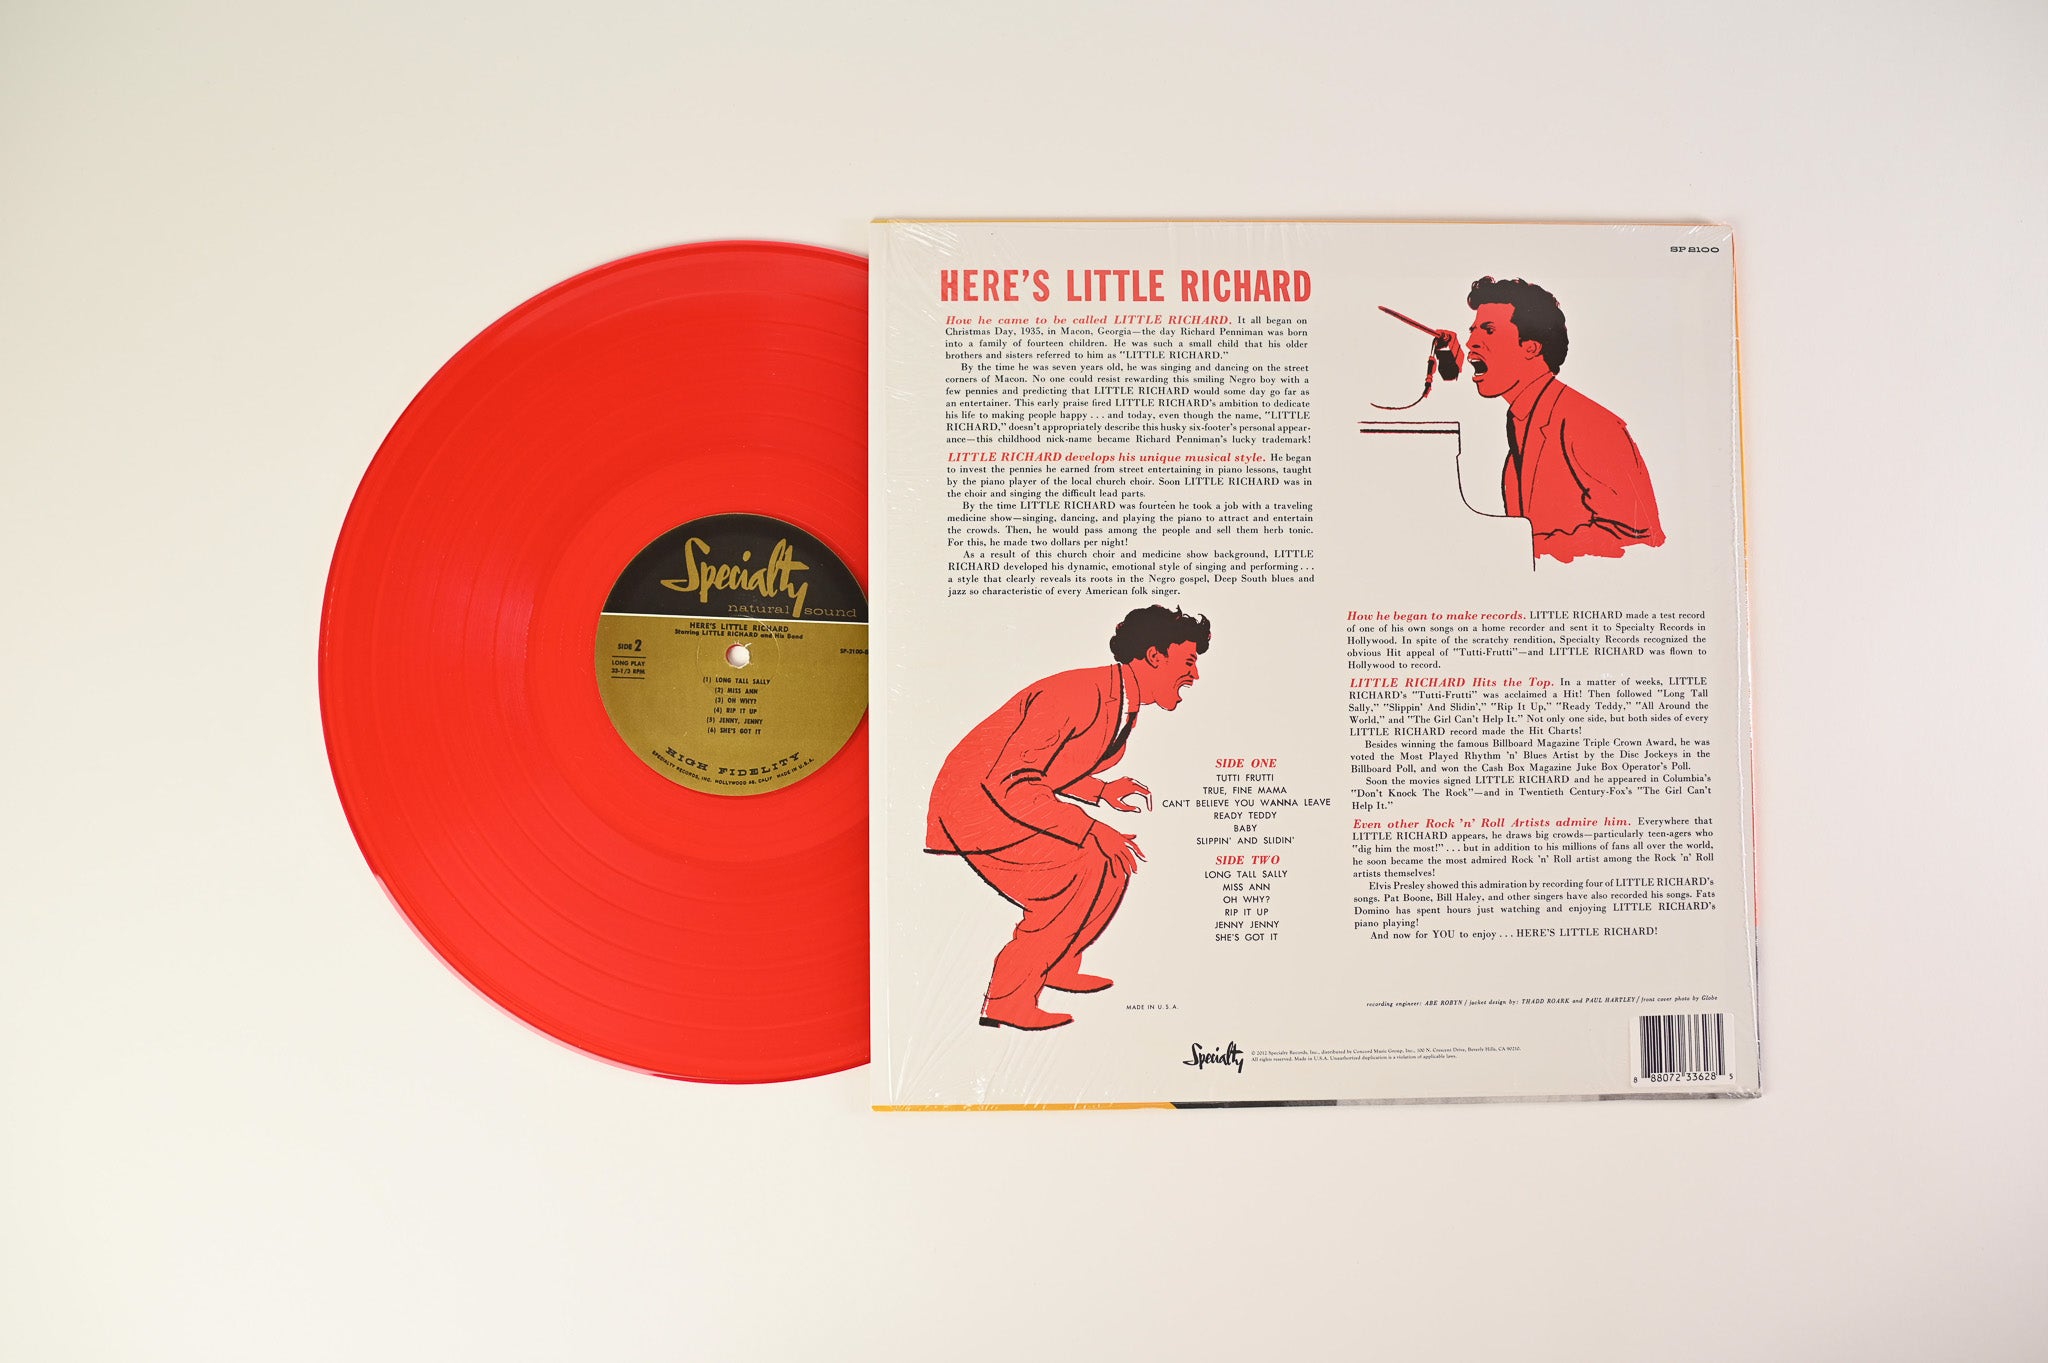 Little Richard - Here's Little Richard on Specialty RSD Reissue on Red Vinyl